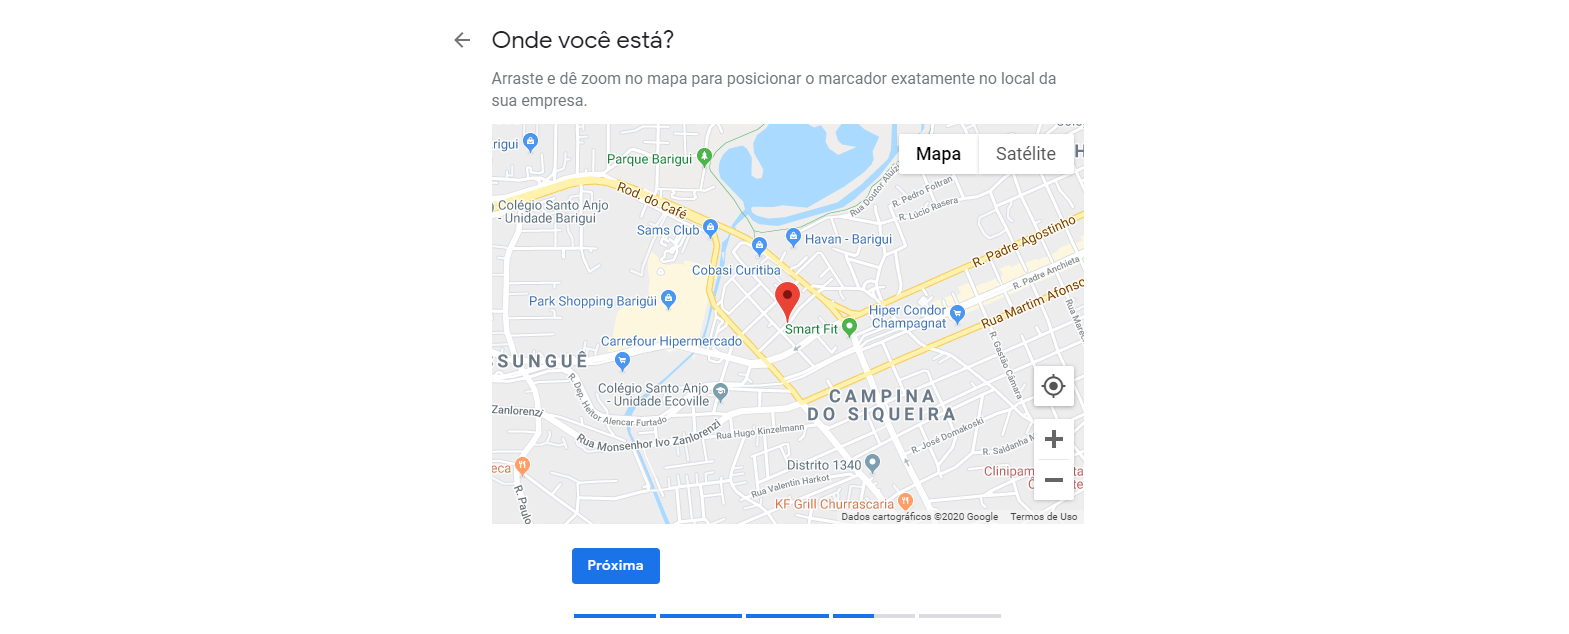 Setimo passo para cadastrar empresa no Google Meu Negócio. Nesta tela você colocar o pin do Google Maps exatamente no local da sua empresa